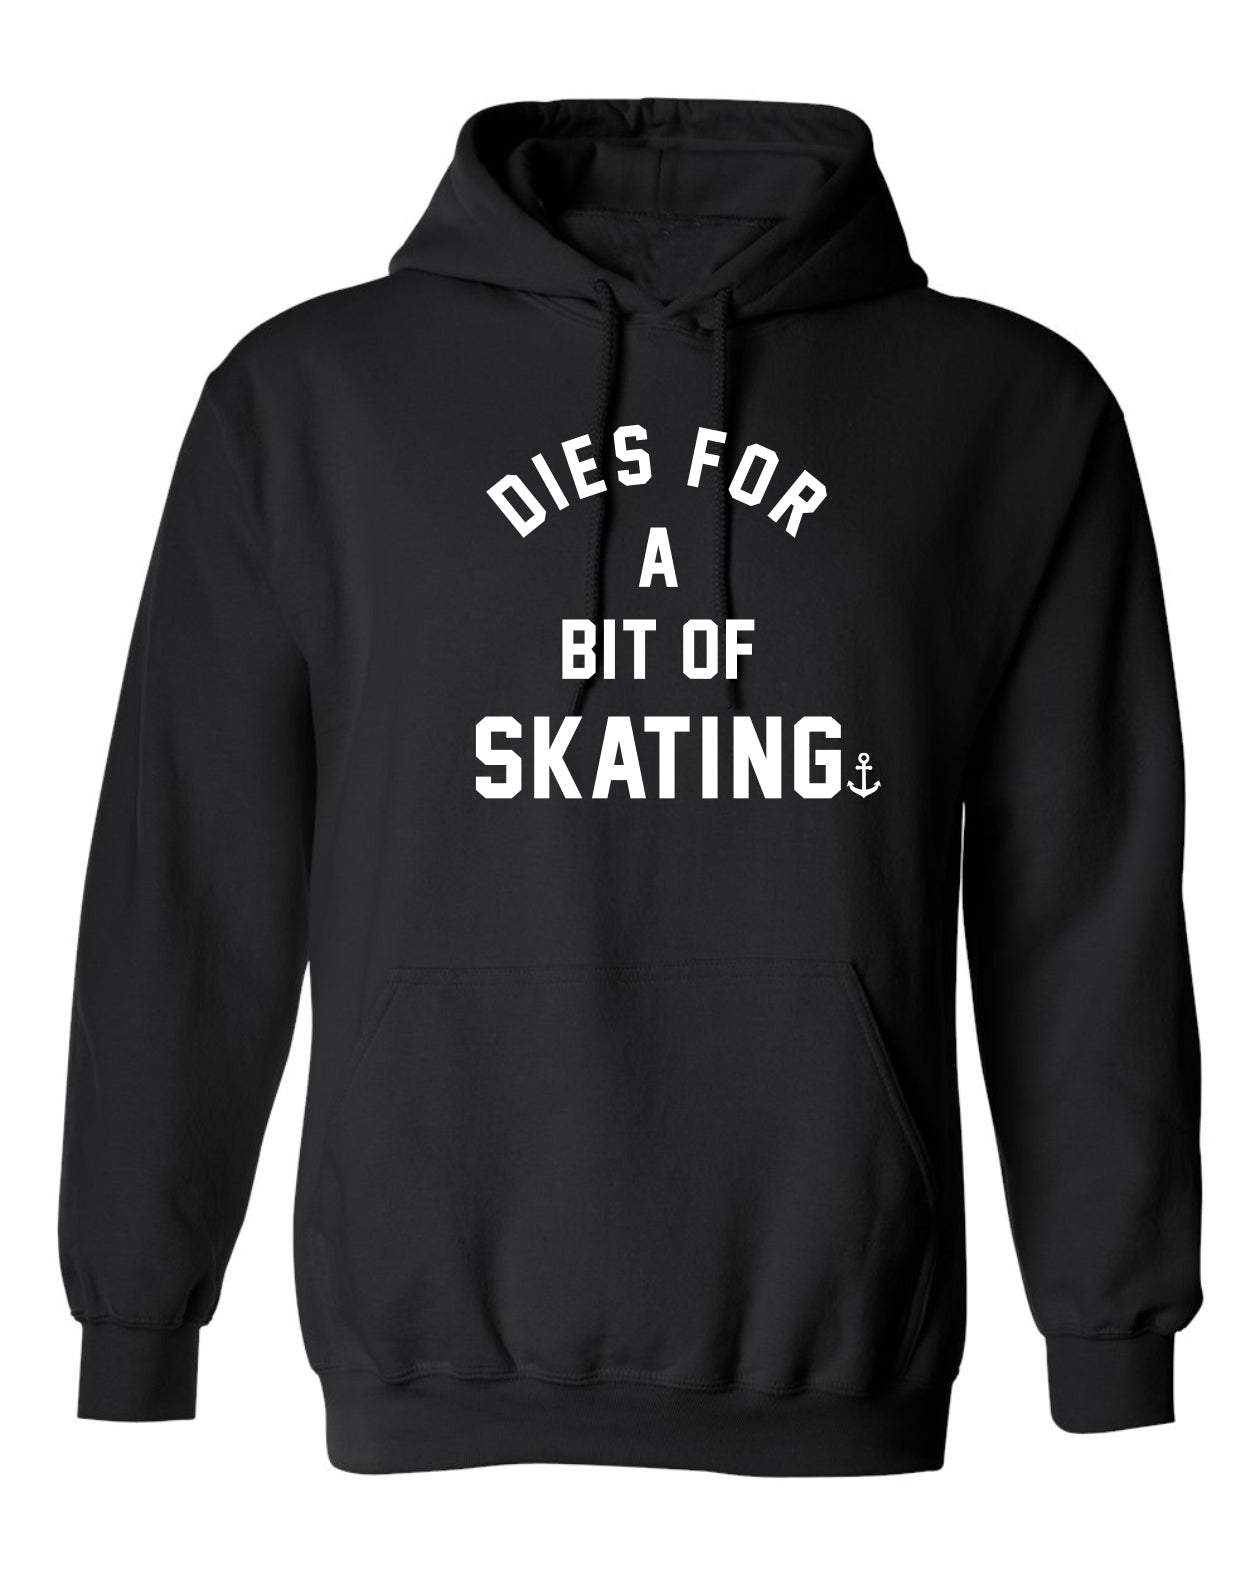 "Dies For A Bit Of Skating" Unisex Hoodie